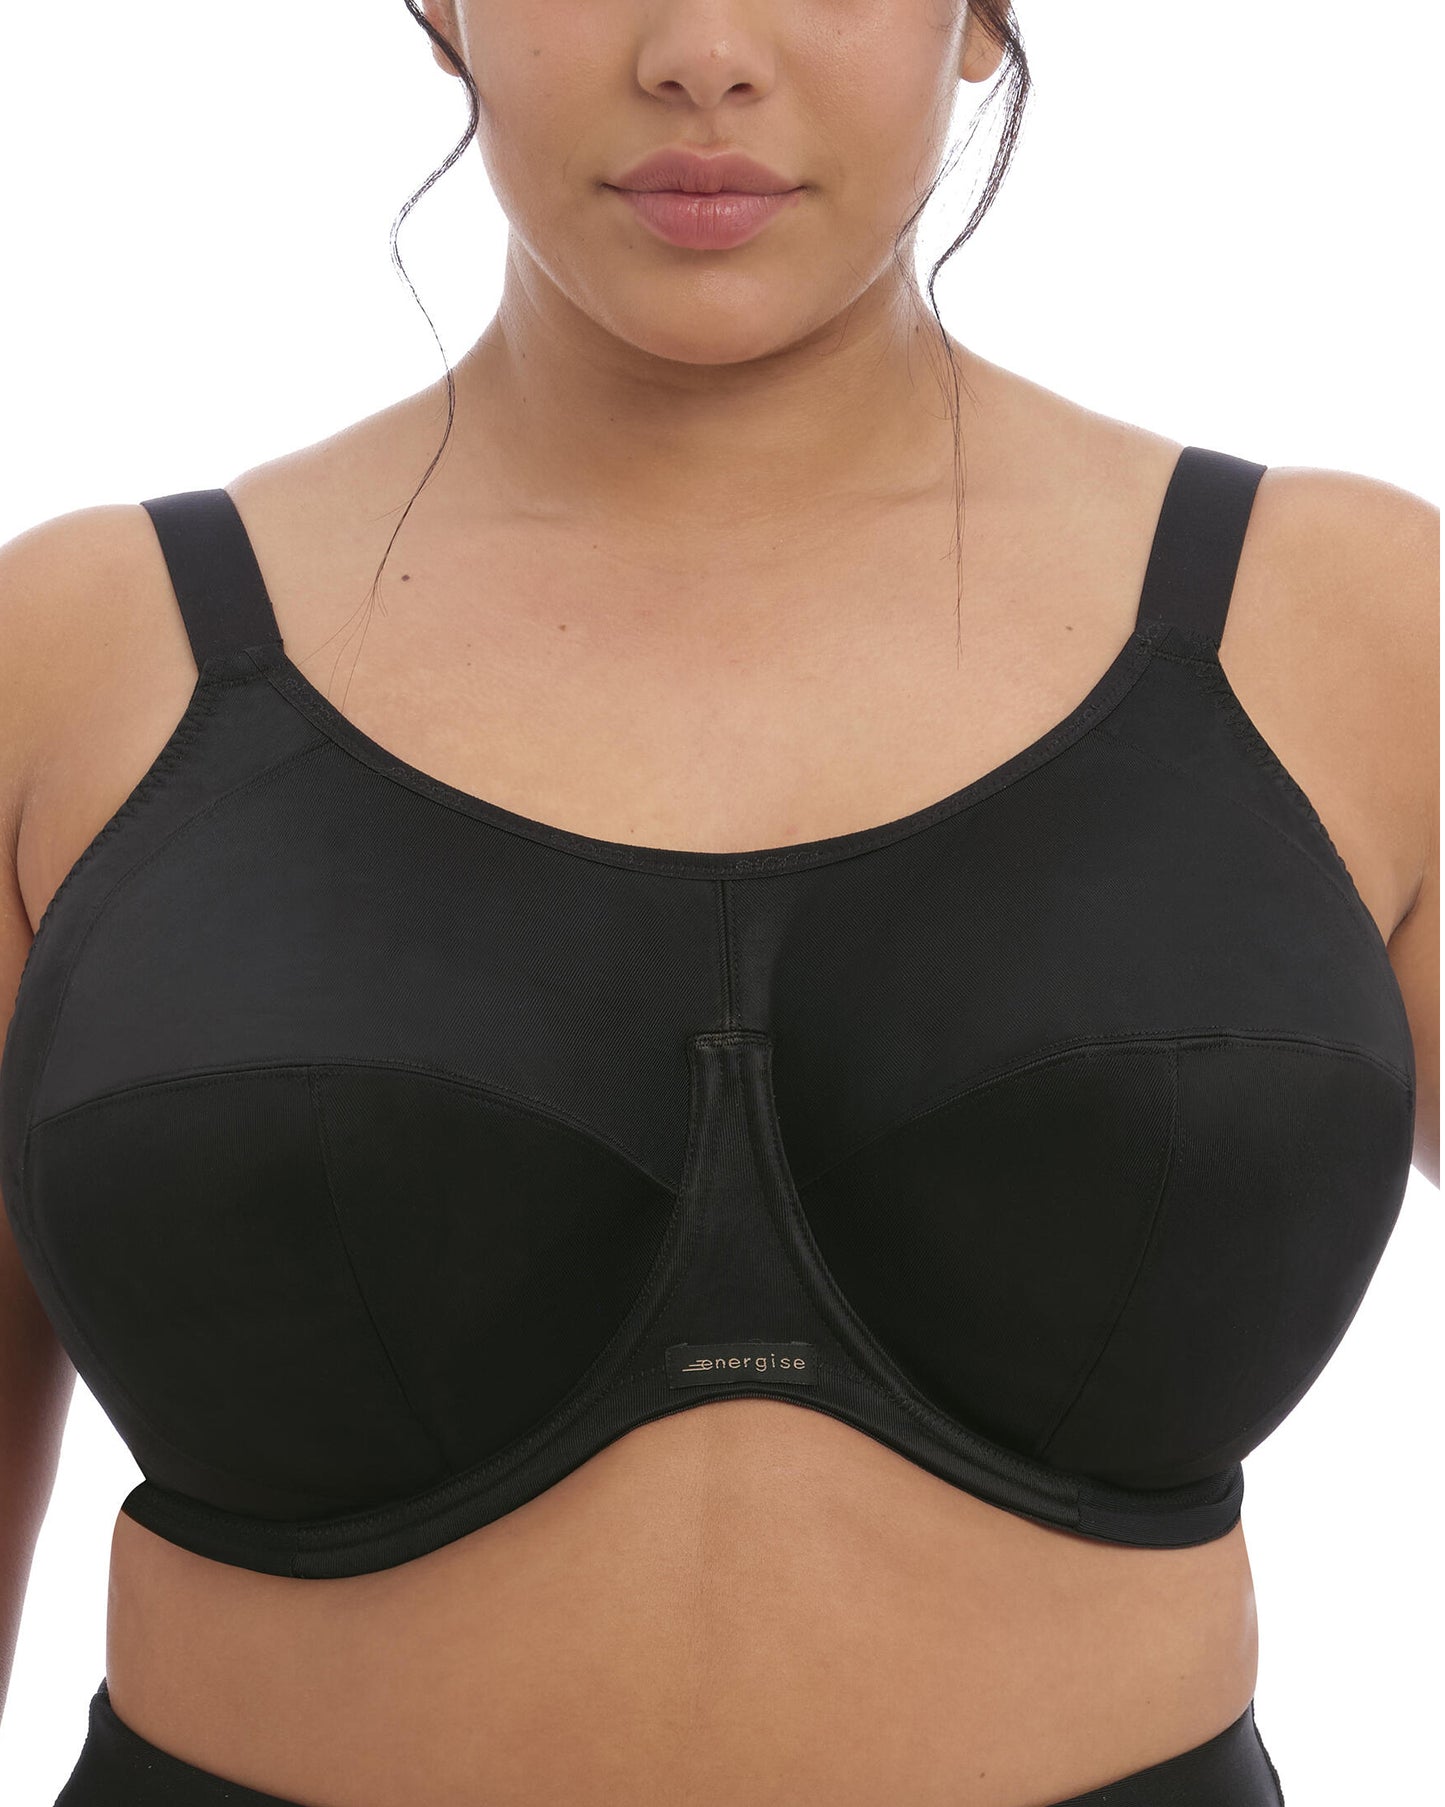 Model wearing an underwire sports bras in black